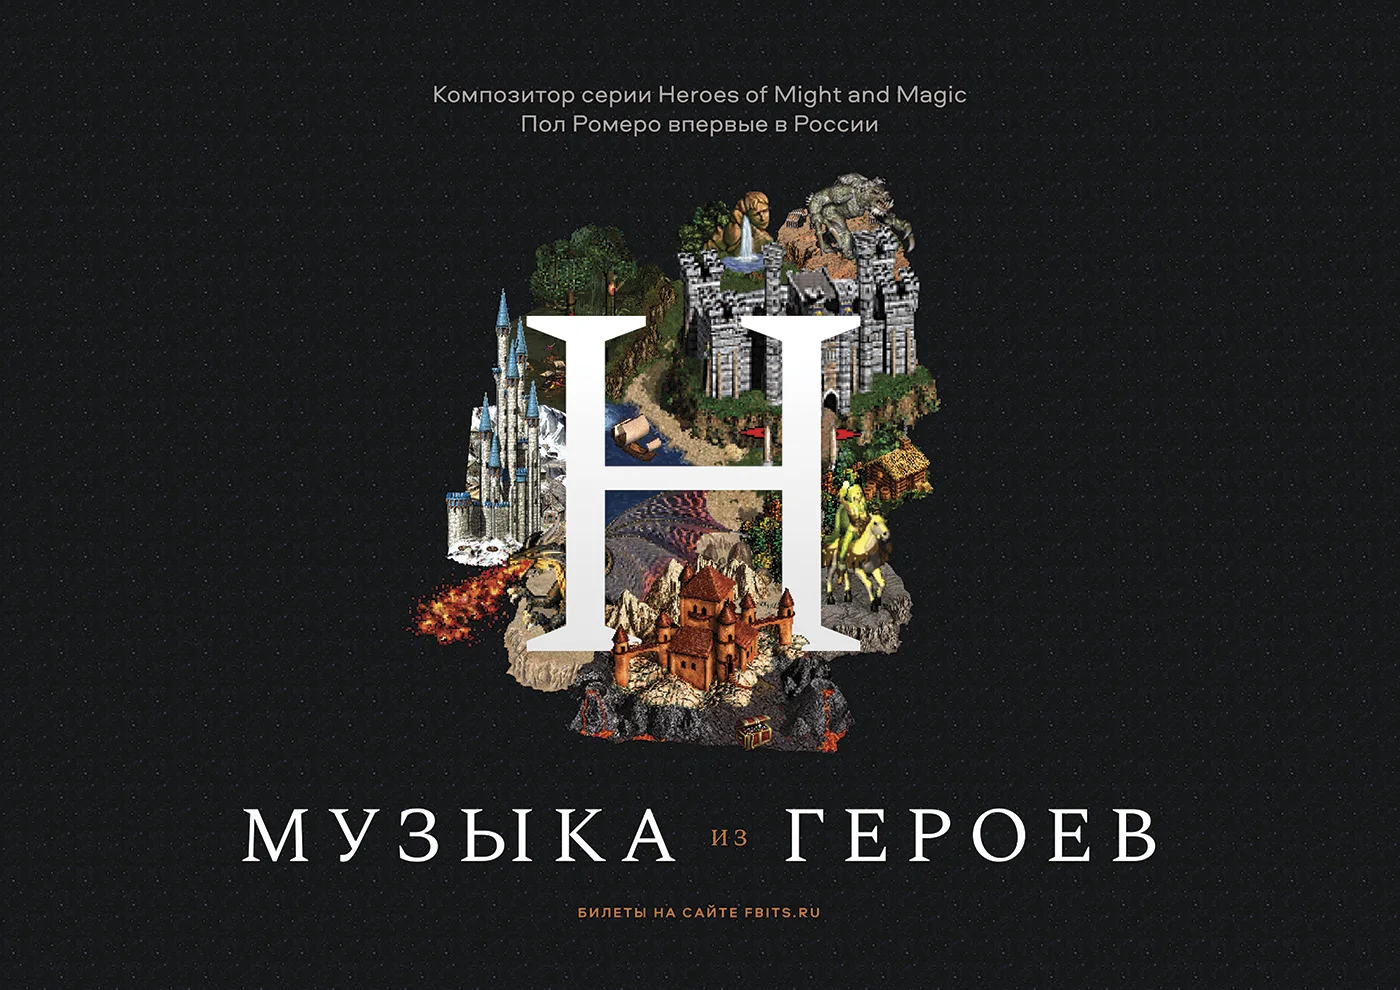 Объявлены даты российских концертов композитора Heroes of Might and Magic III - фото 2